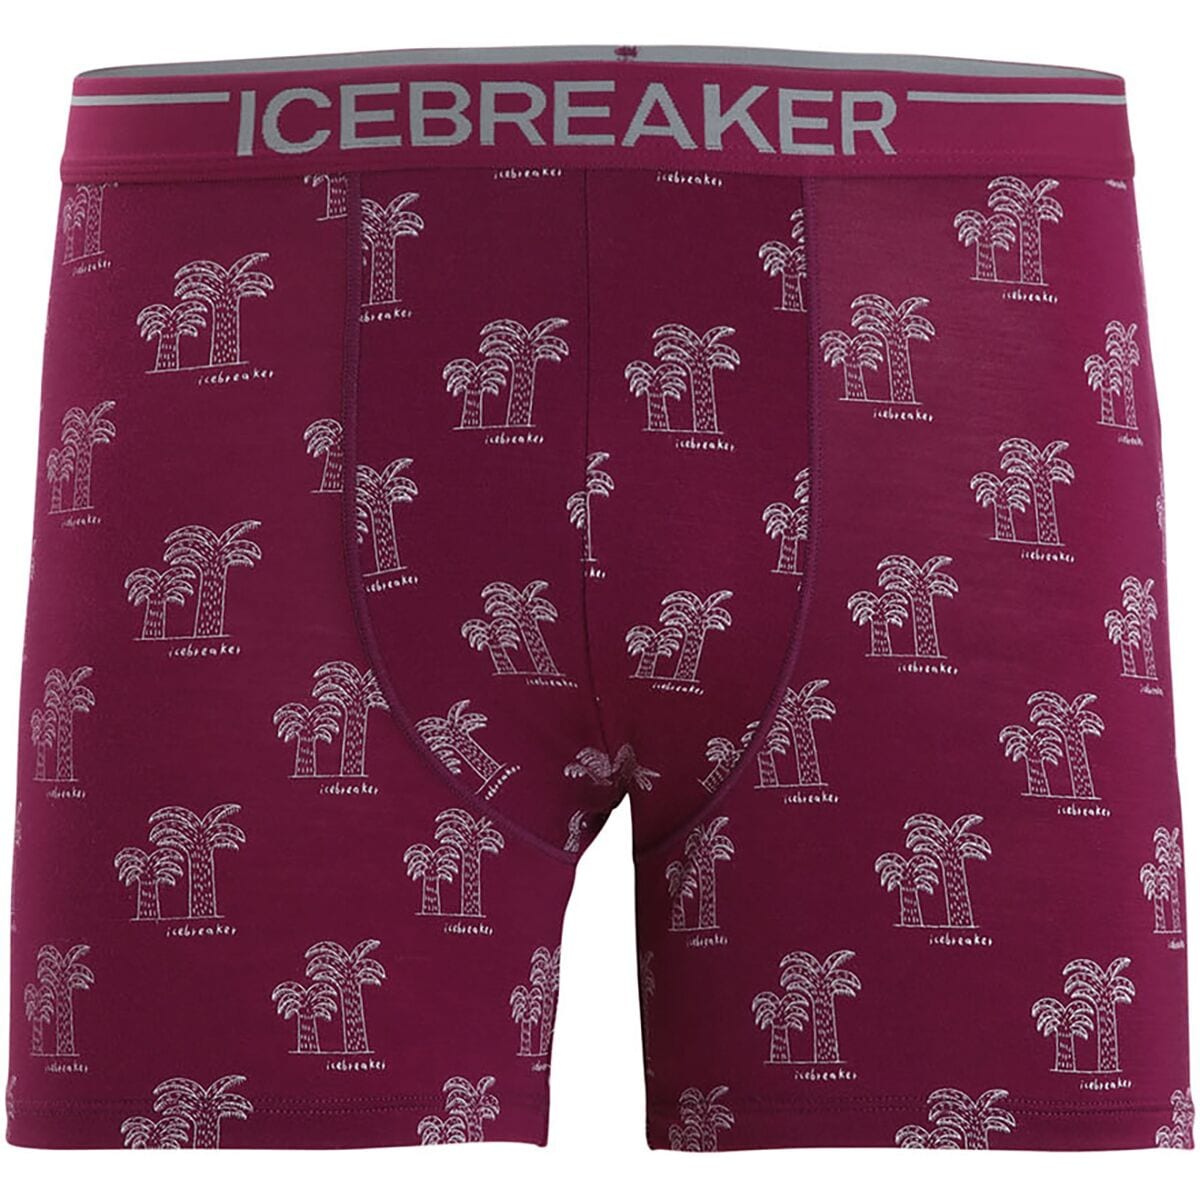 Icebreaker Anatomica Boxers - Men's - Men